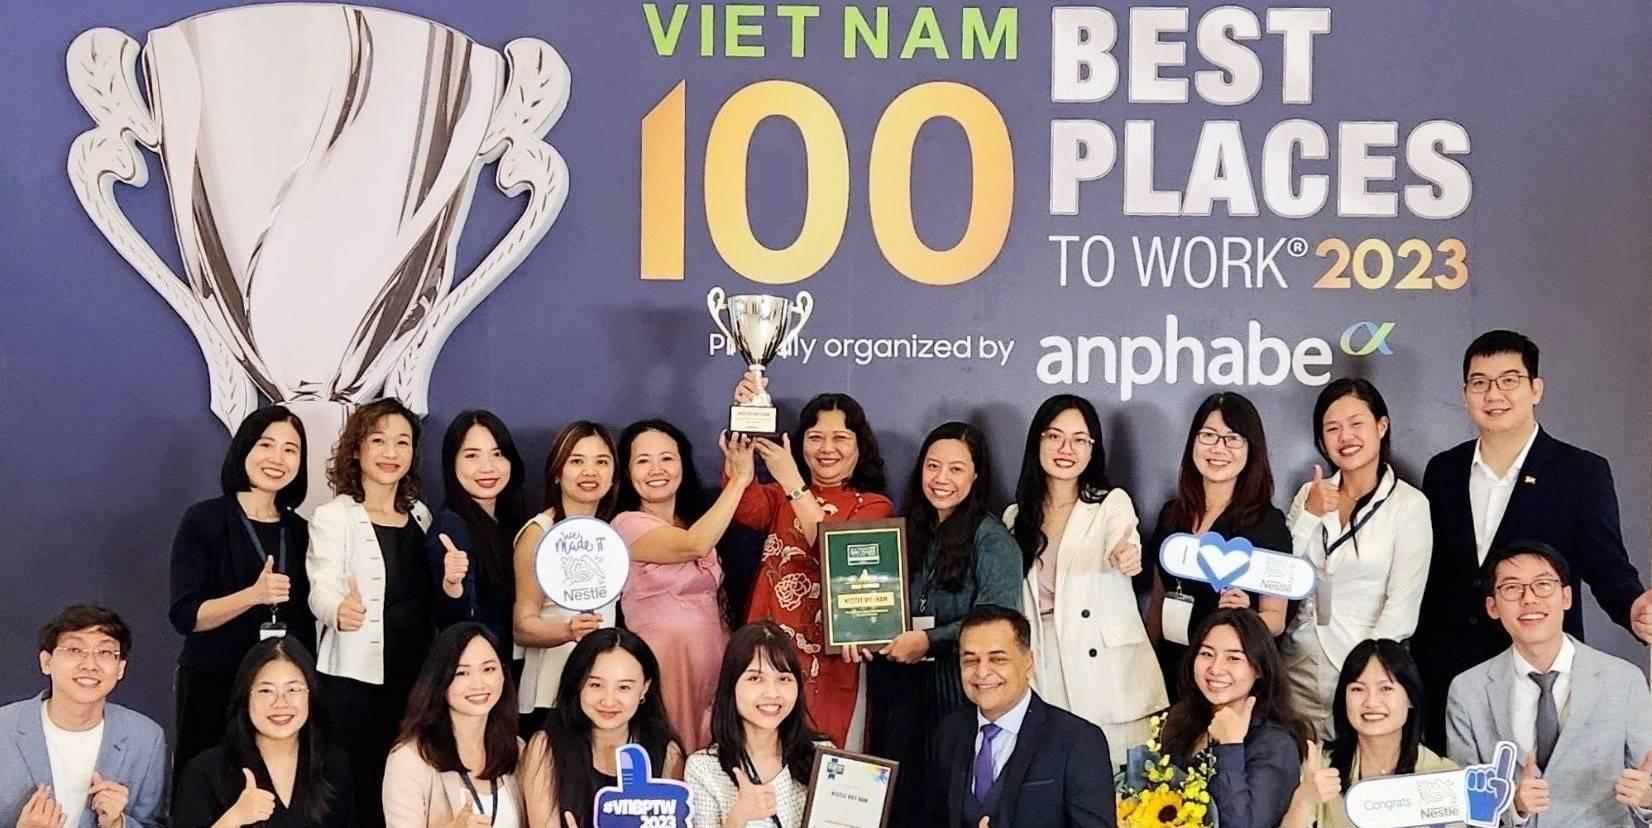 Nestlé Vietnam Limited